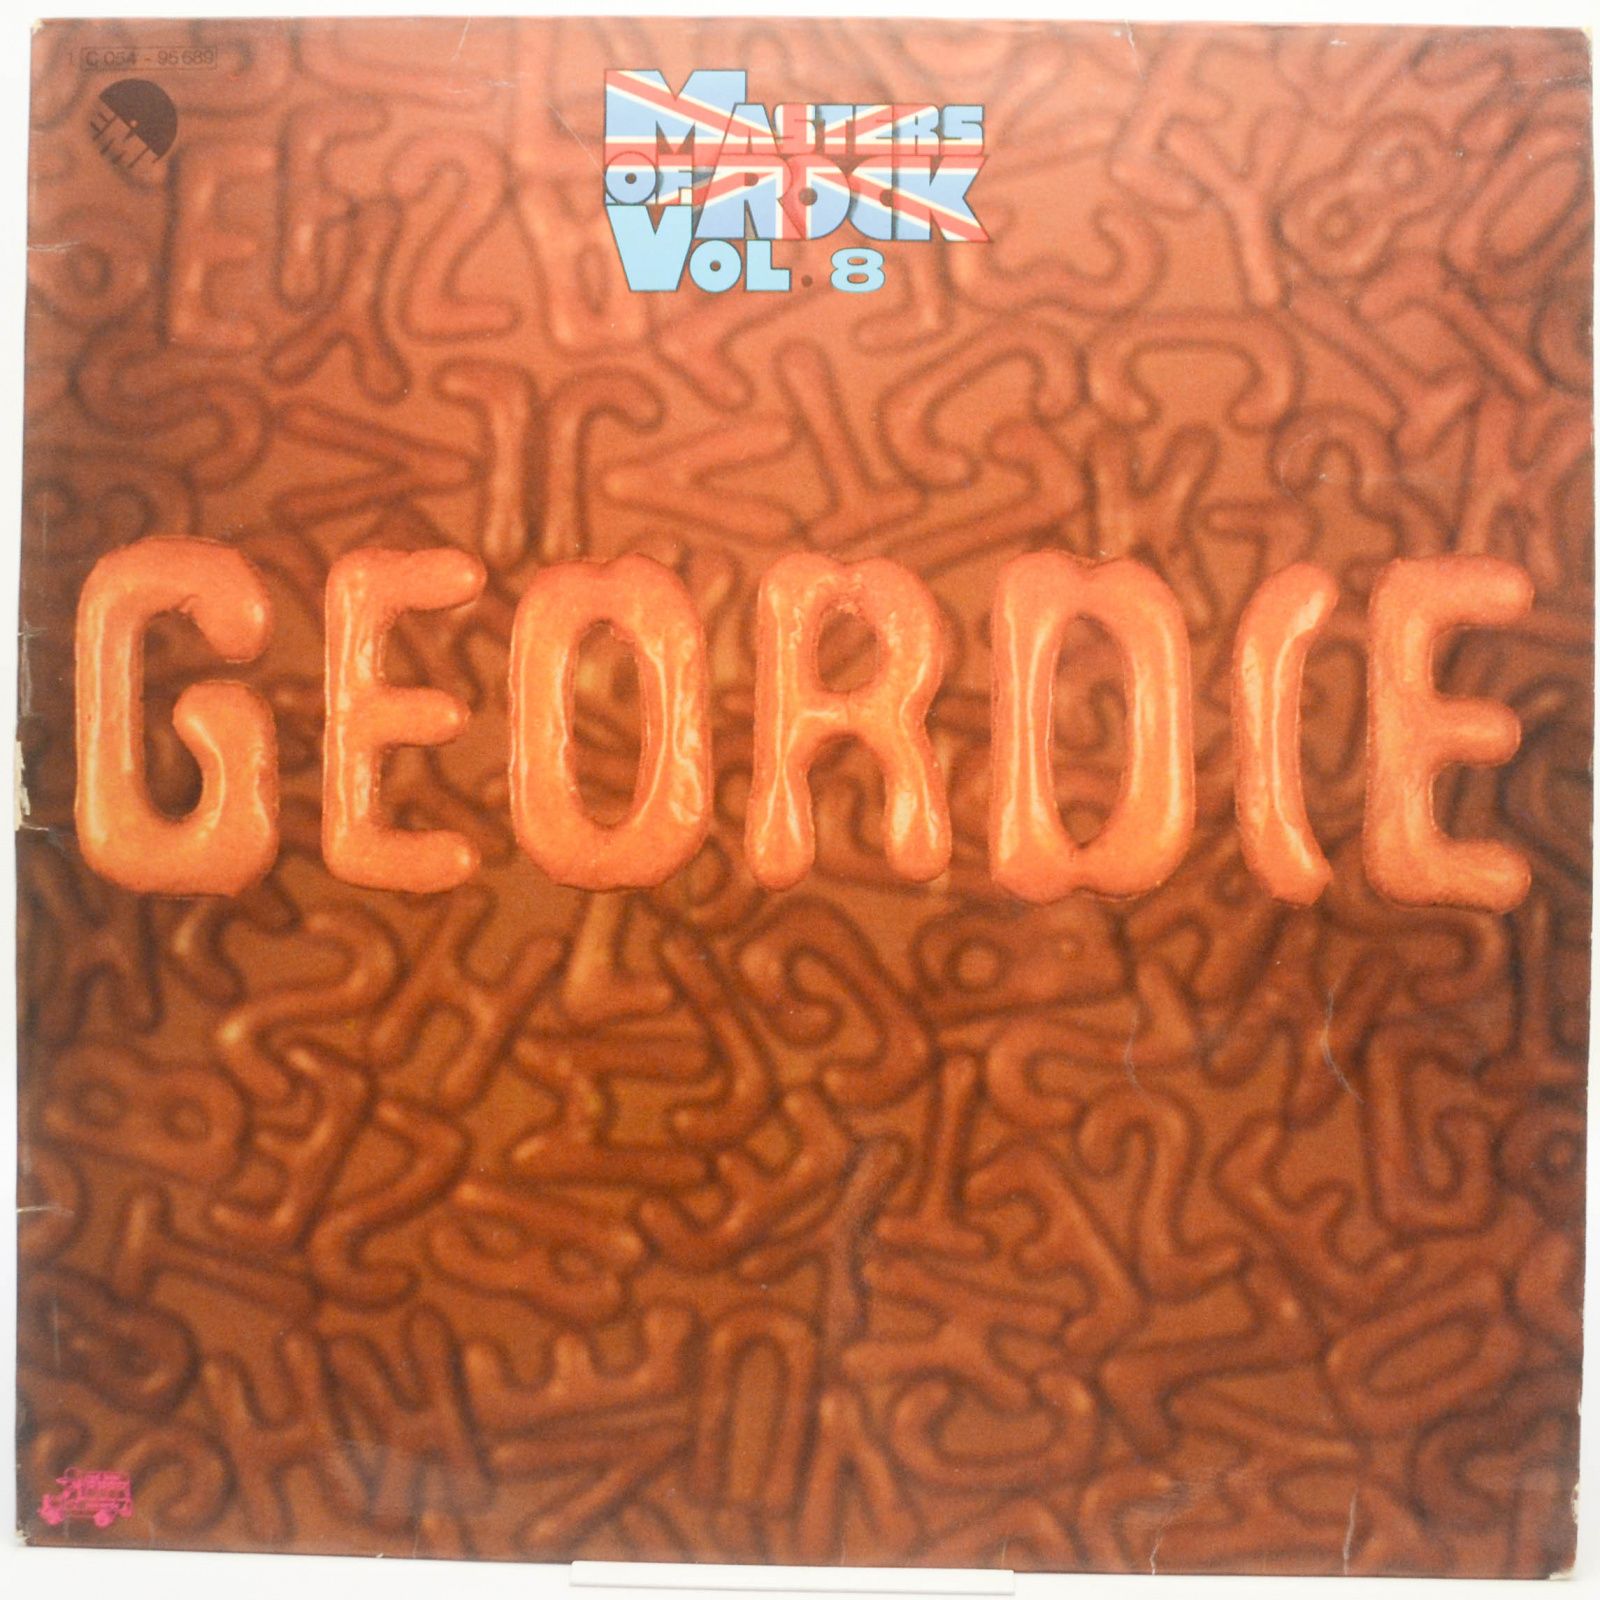 Geordie — Masters Of Rock Vol. 8, 1973